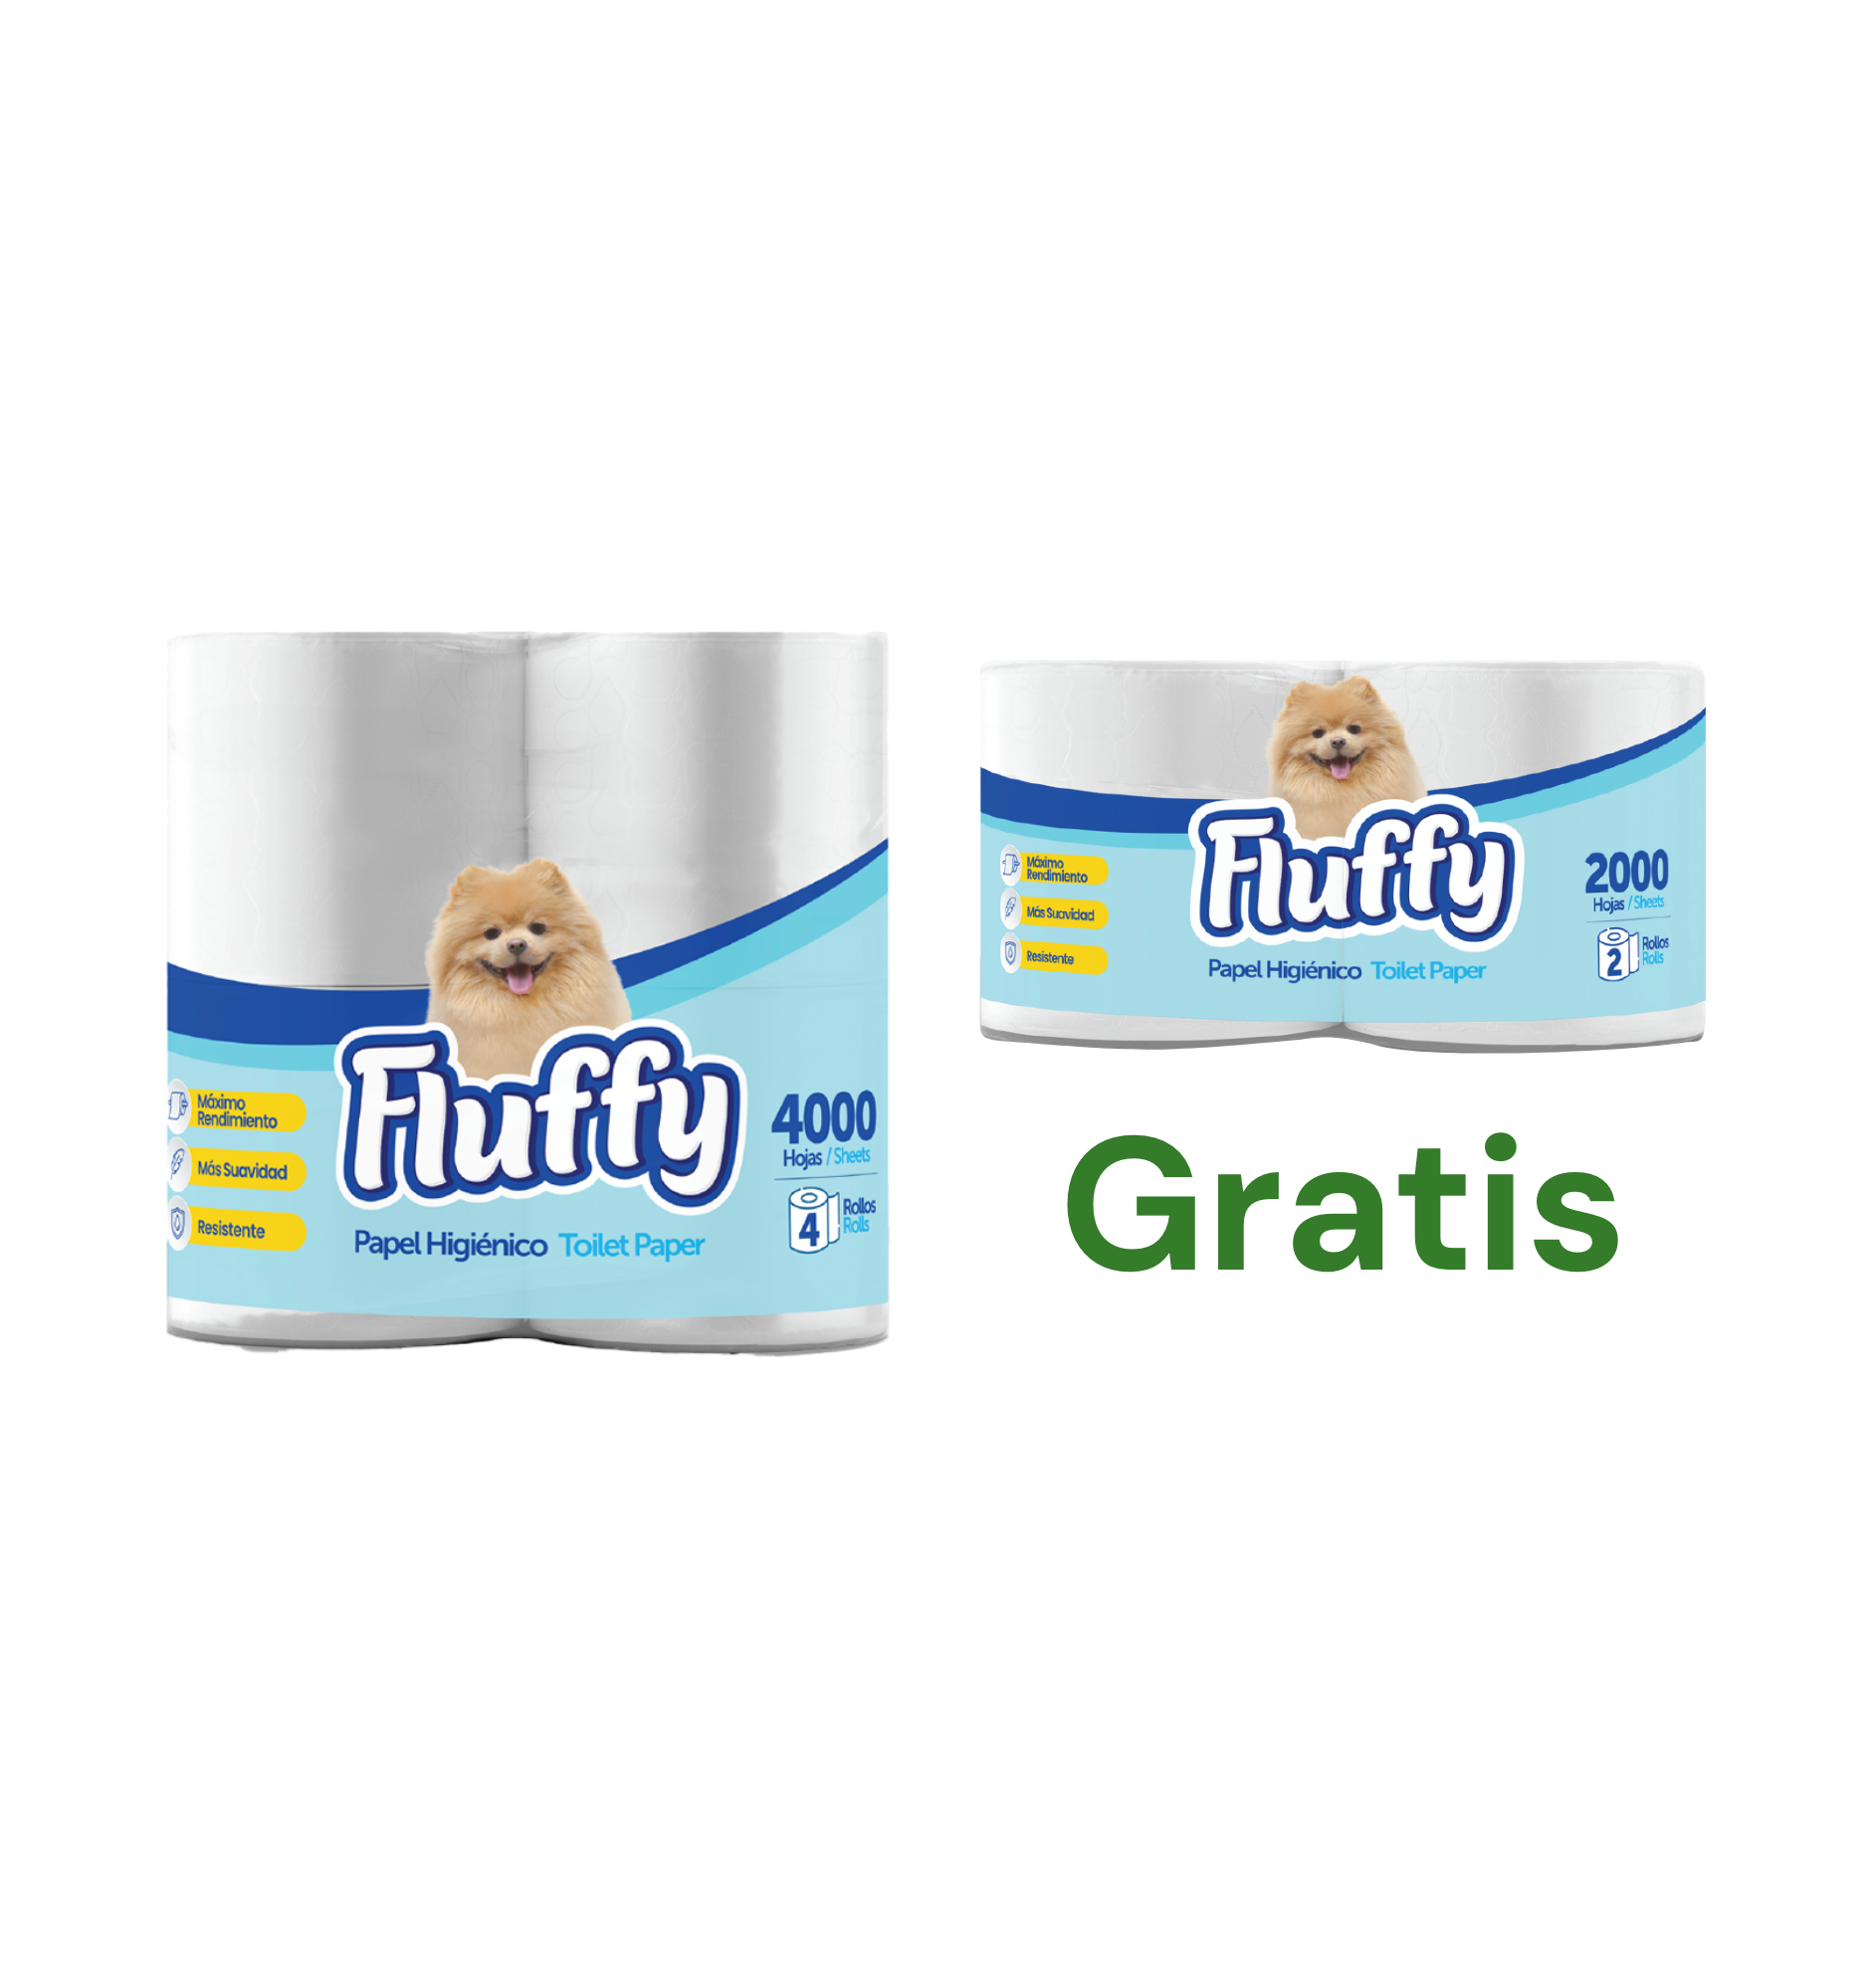 Fluffy Mil Hojas 4 rollos + GRATIS Fluffy 2 rollos